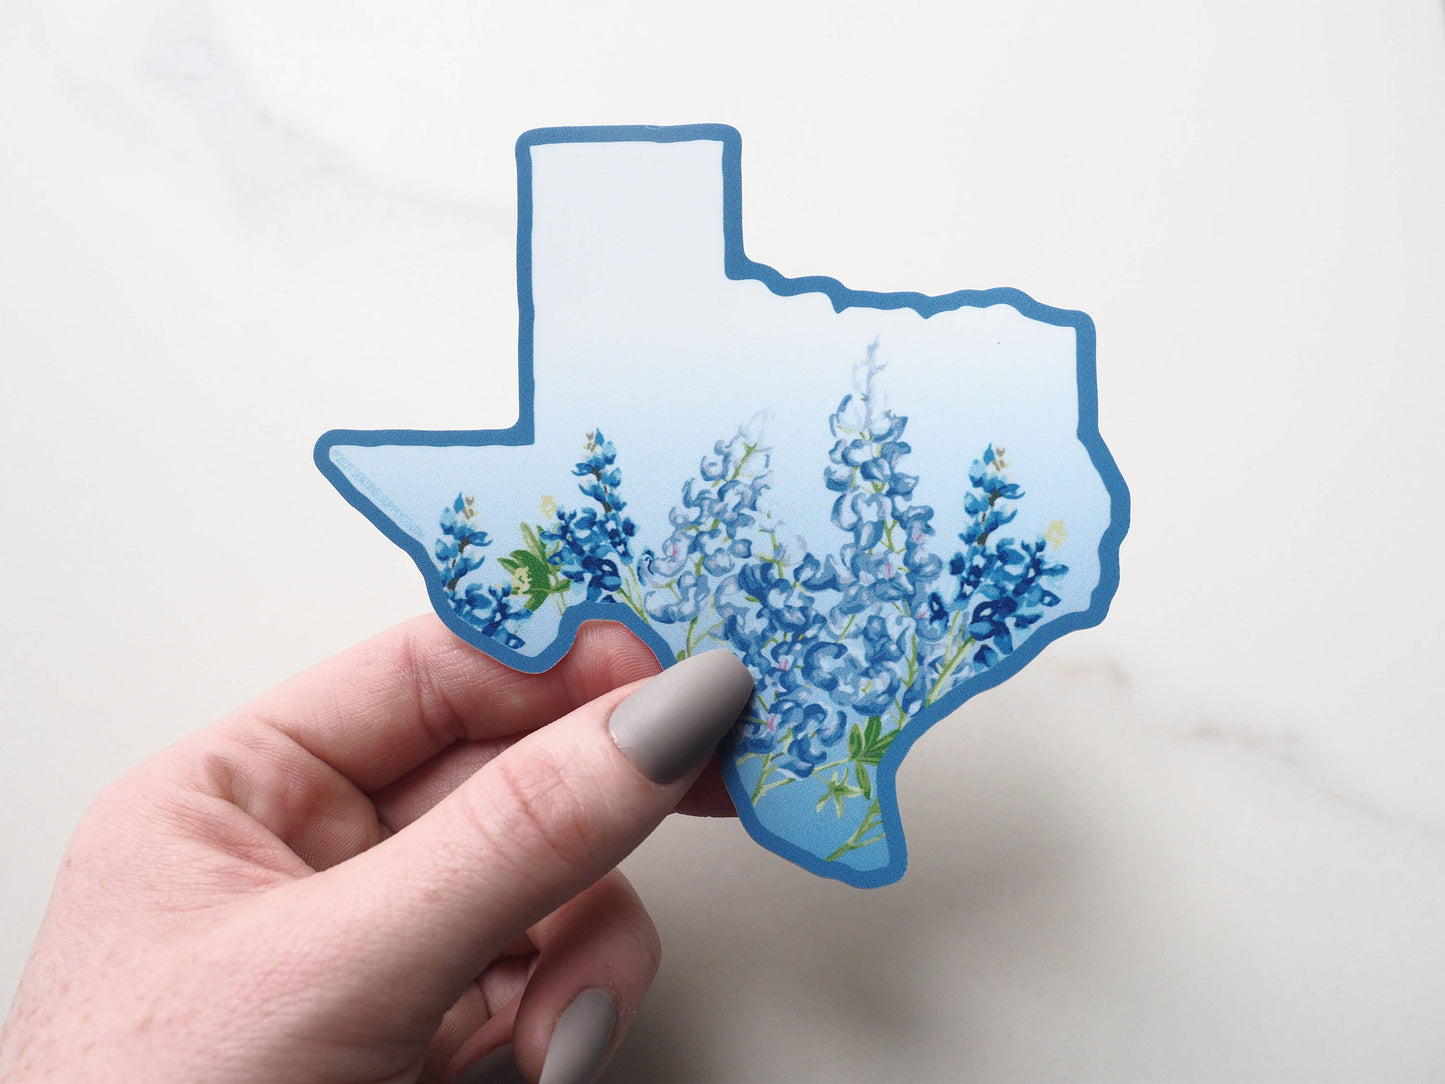 Texas Bluebonnets Decal, Texas Bumper Sticker: Small - 3"